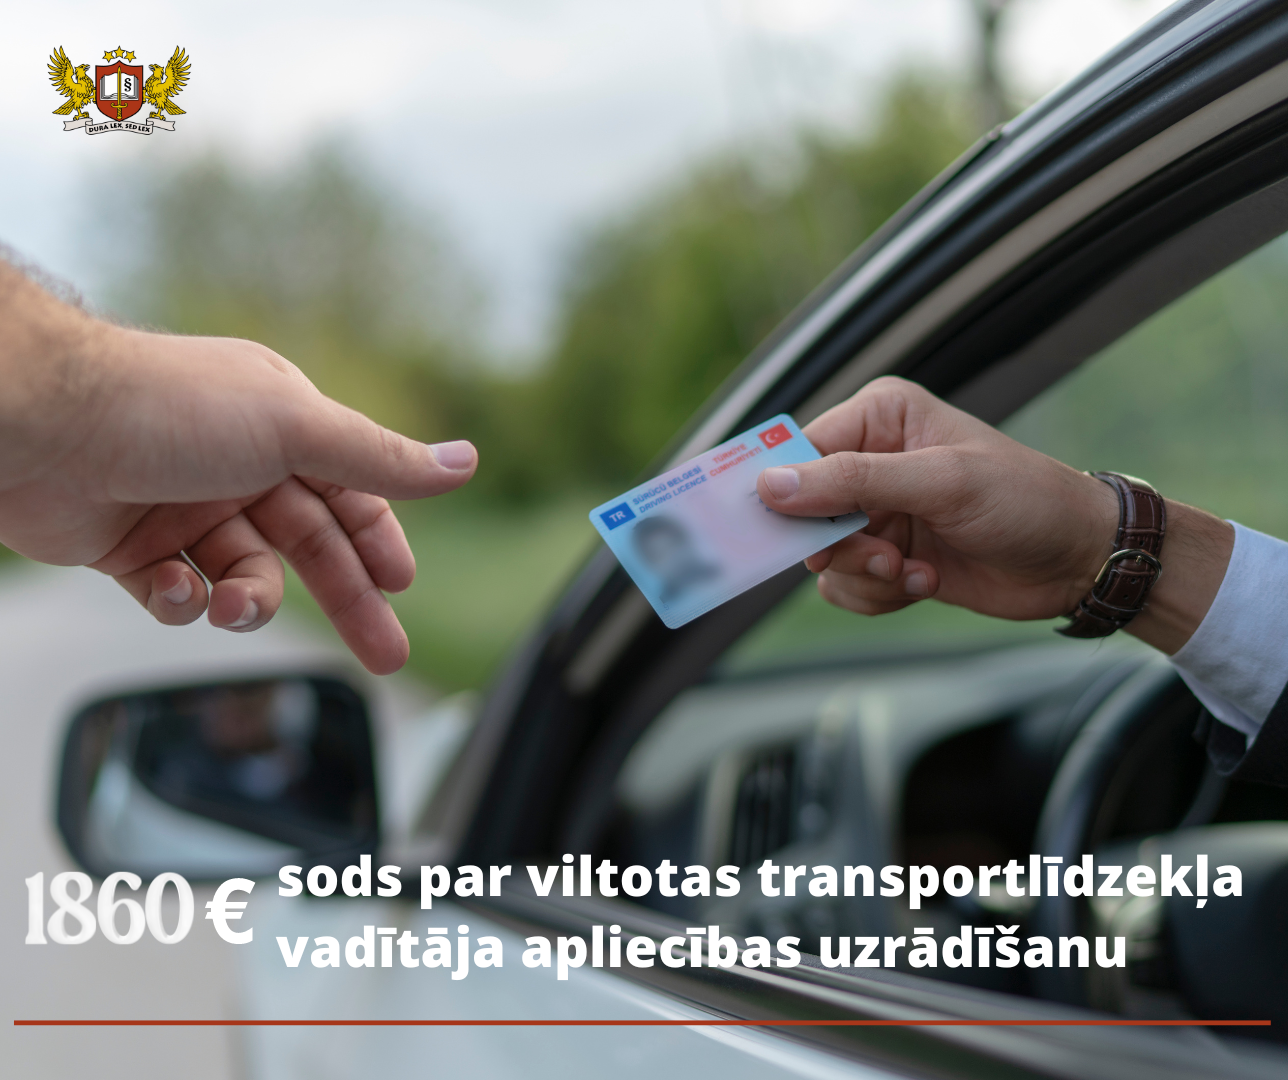 Par viltotas transportlīdzekļa vadītāja apliecības uzrādīšanu robežpārbaudes laikā personai nosaka 1860 eiro lielu naudas sodu